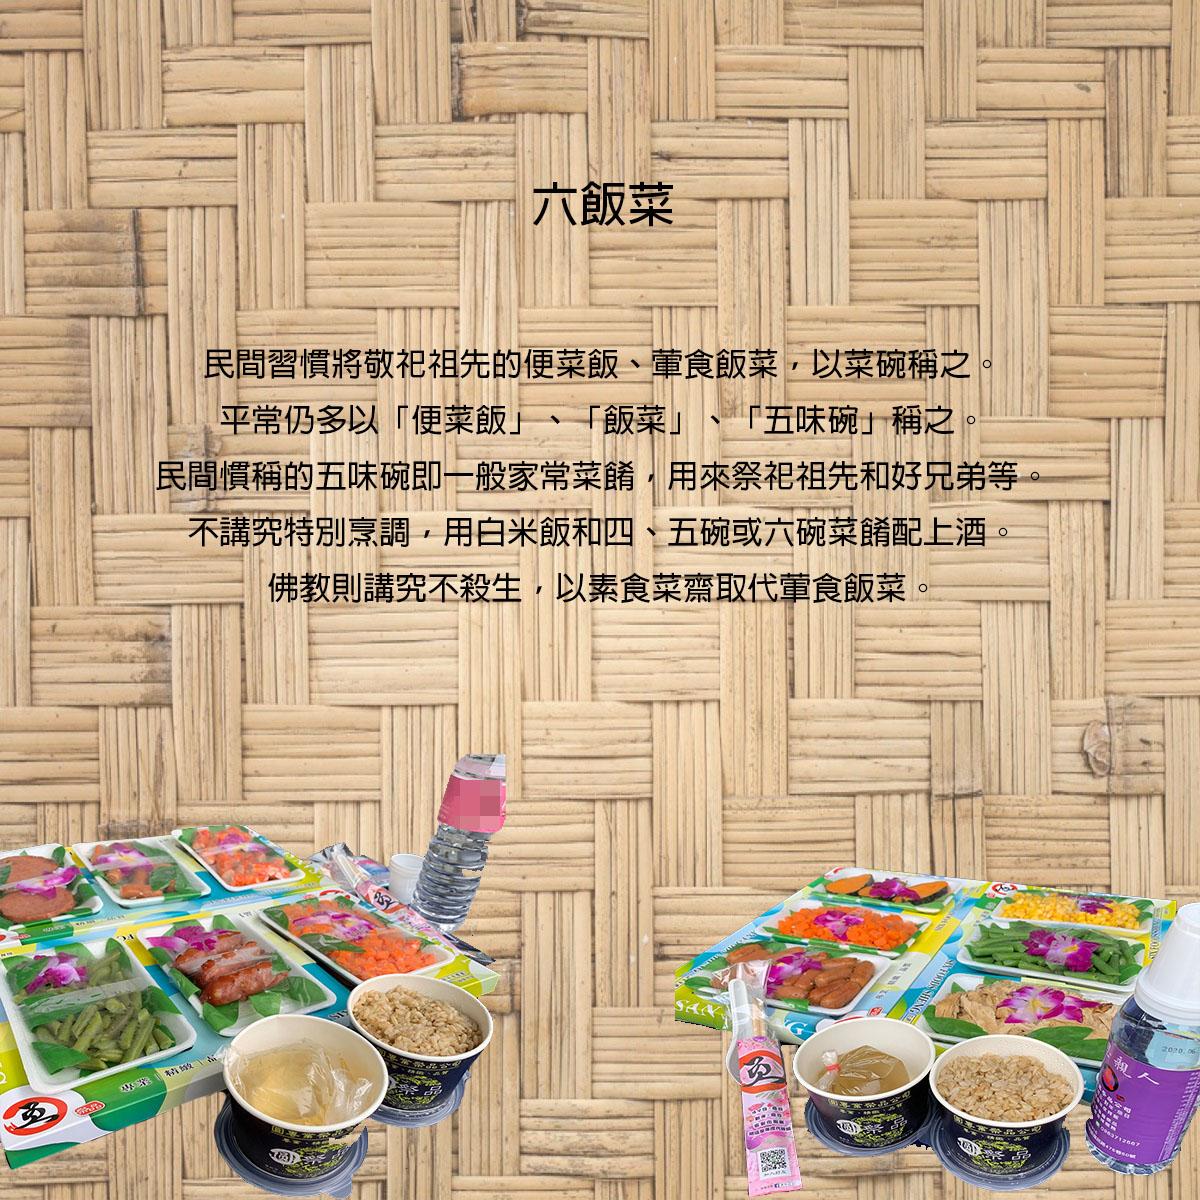 法事祭品-尾日飽福葷六飯菜全組含未煮八珍湯藥壺(葷)